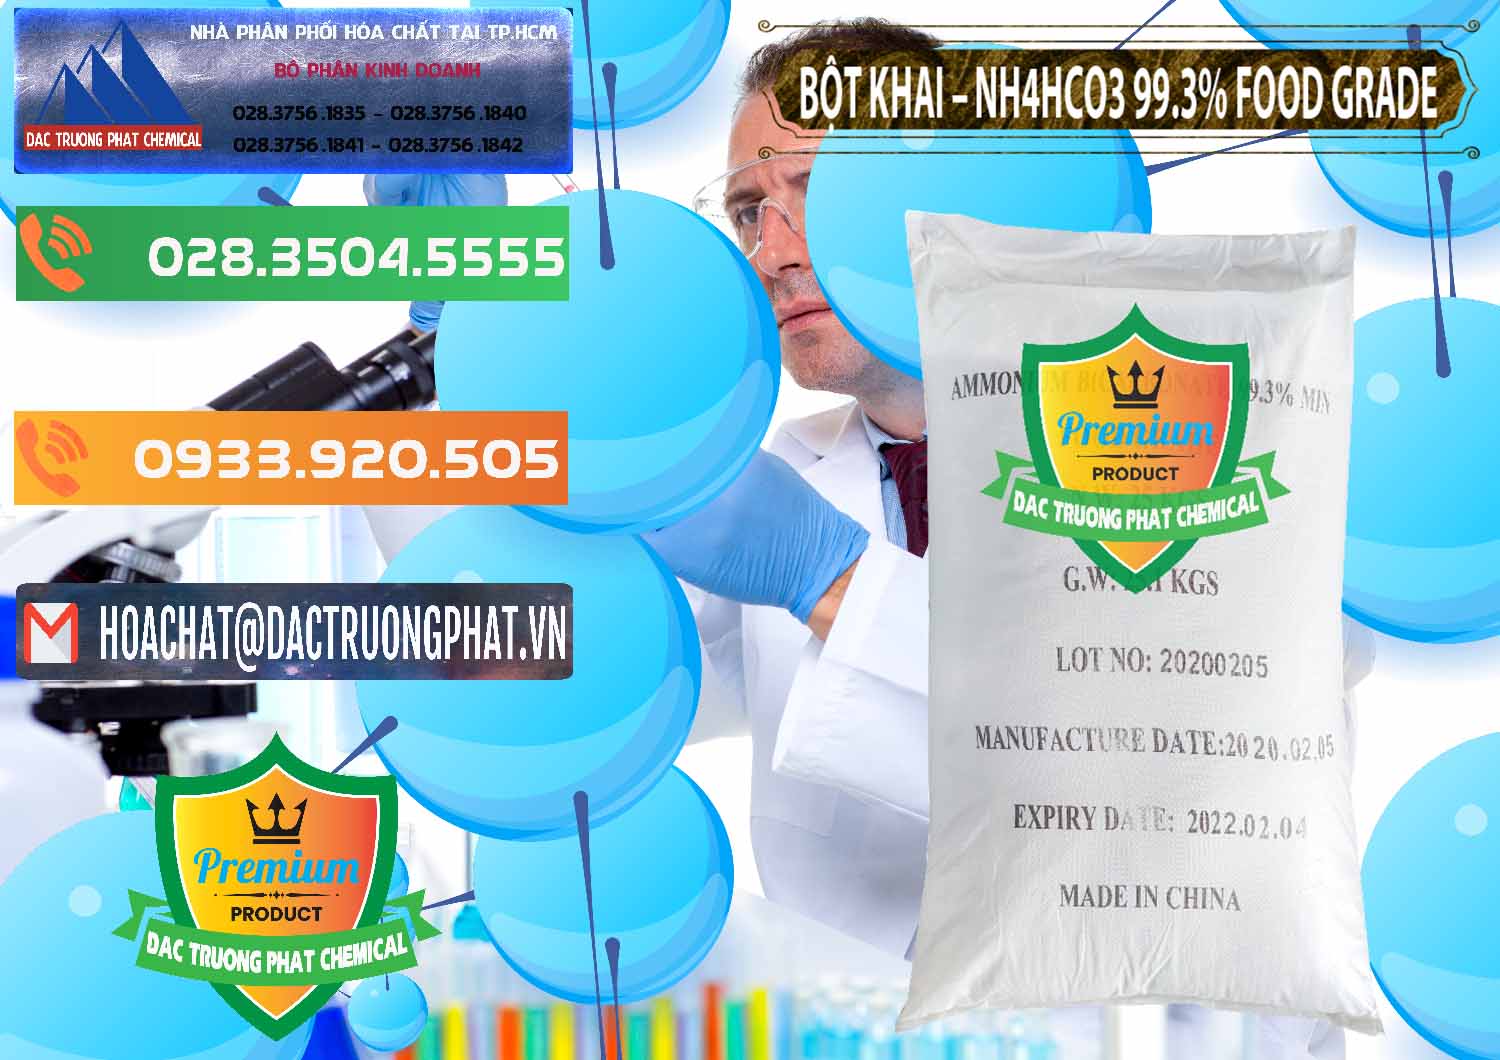 Nơi nhập khẩu - bán Ammonium Bicarbonate – Bột Khai NH4HCO3 Food Grade Trung Quốc China - 0019 - Phân phối và cung cấp hóa chất tại TP.HCM - hoachatxulynuoc.com.vn